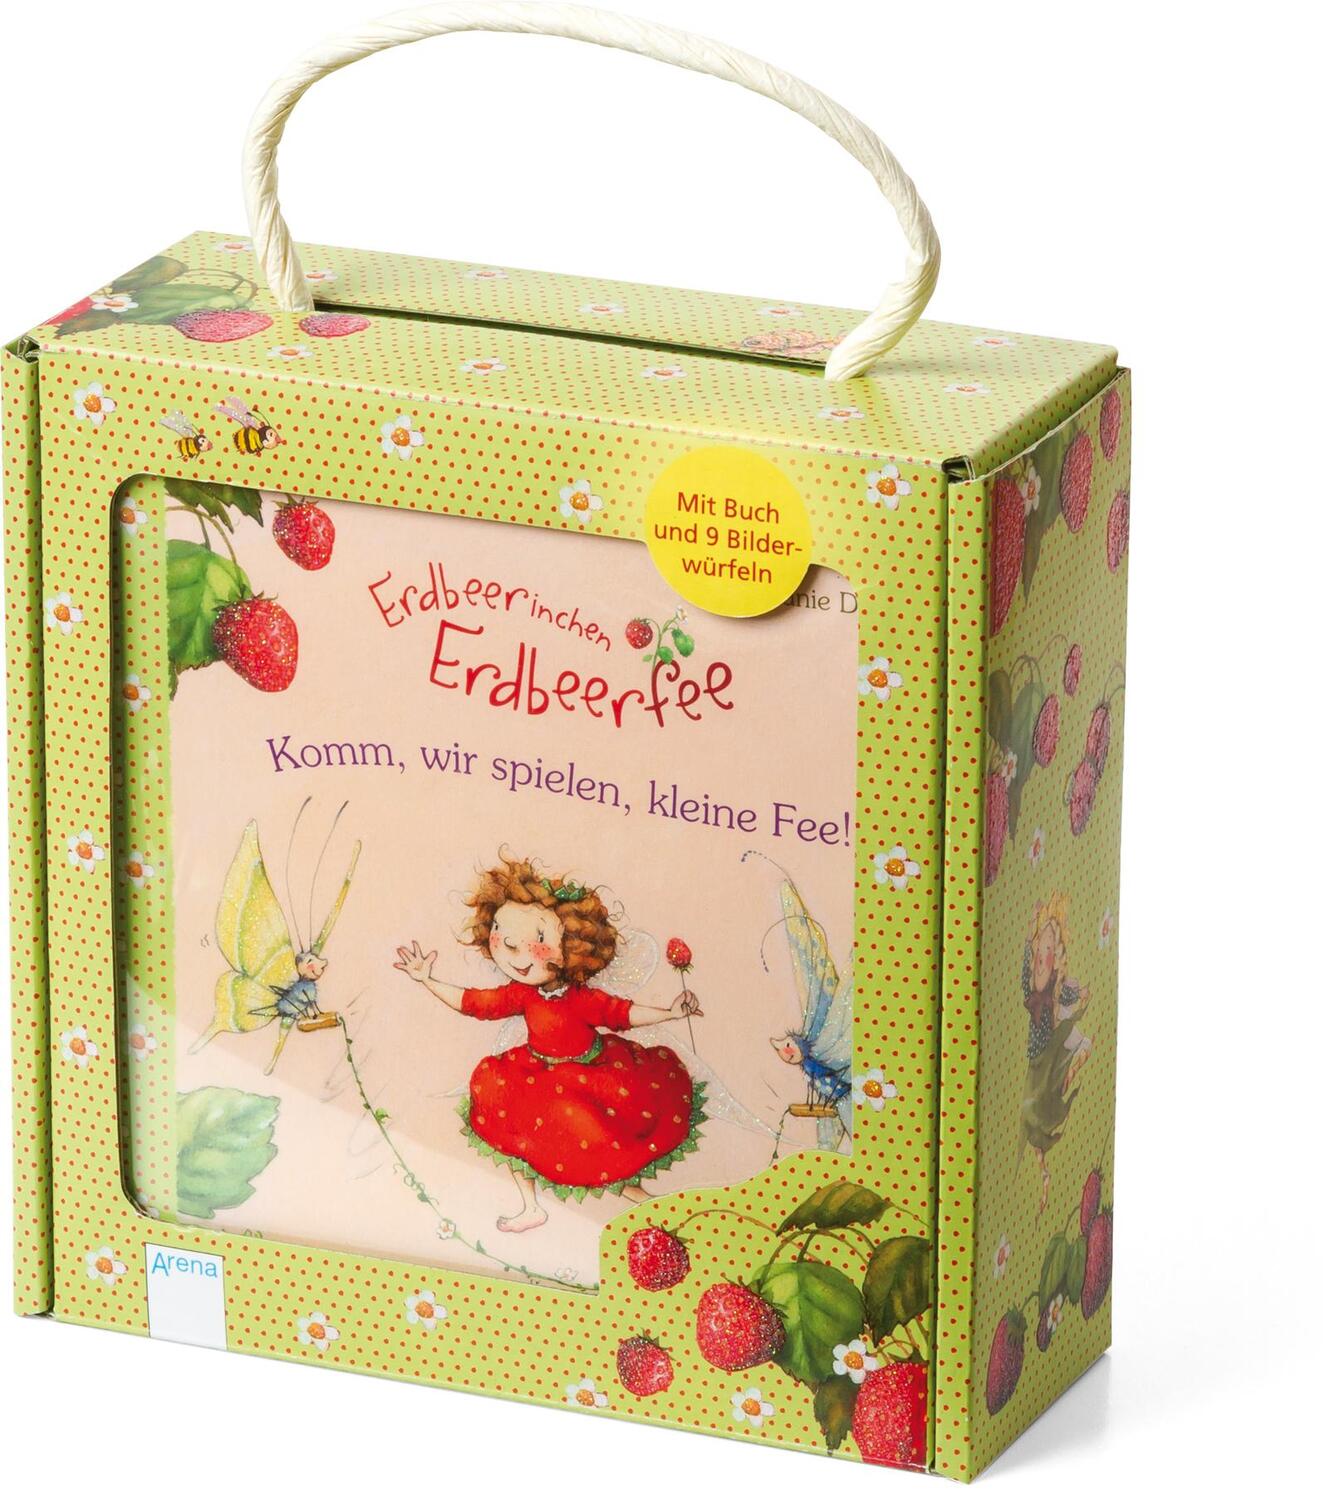 Cover: 9783401709727 | Erdbeerinchen Erdbeerfee. Komm, wir spielen, kleine Fee! | Dahle | Box